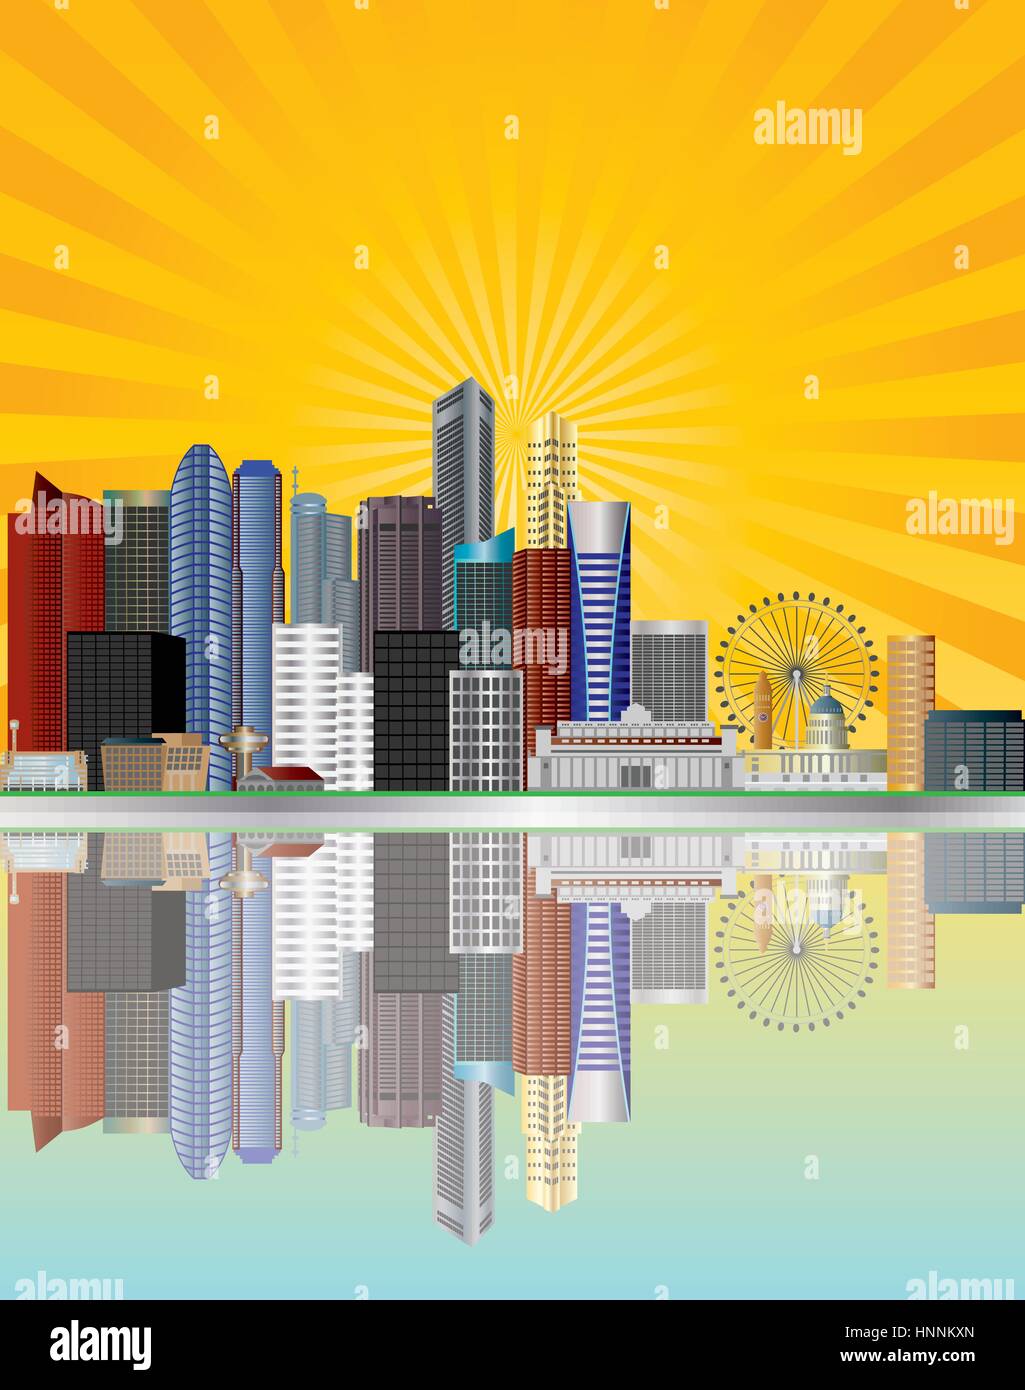 Singapur City Skyline Reflexion entlang der Mündung des Singapore River mit Sonnenstrahlen Hintergrund Illustration Stock Vektor